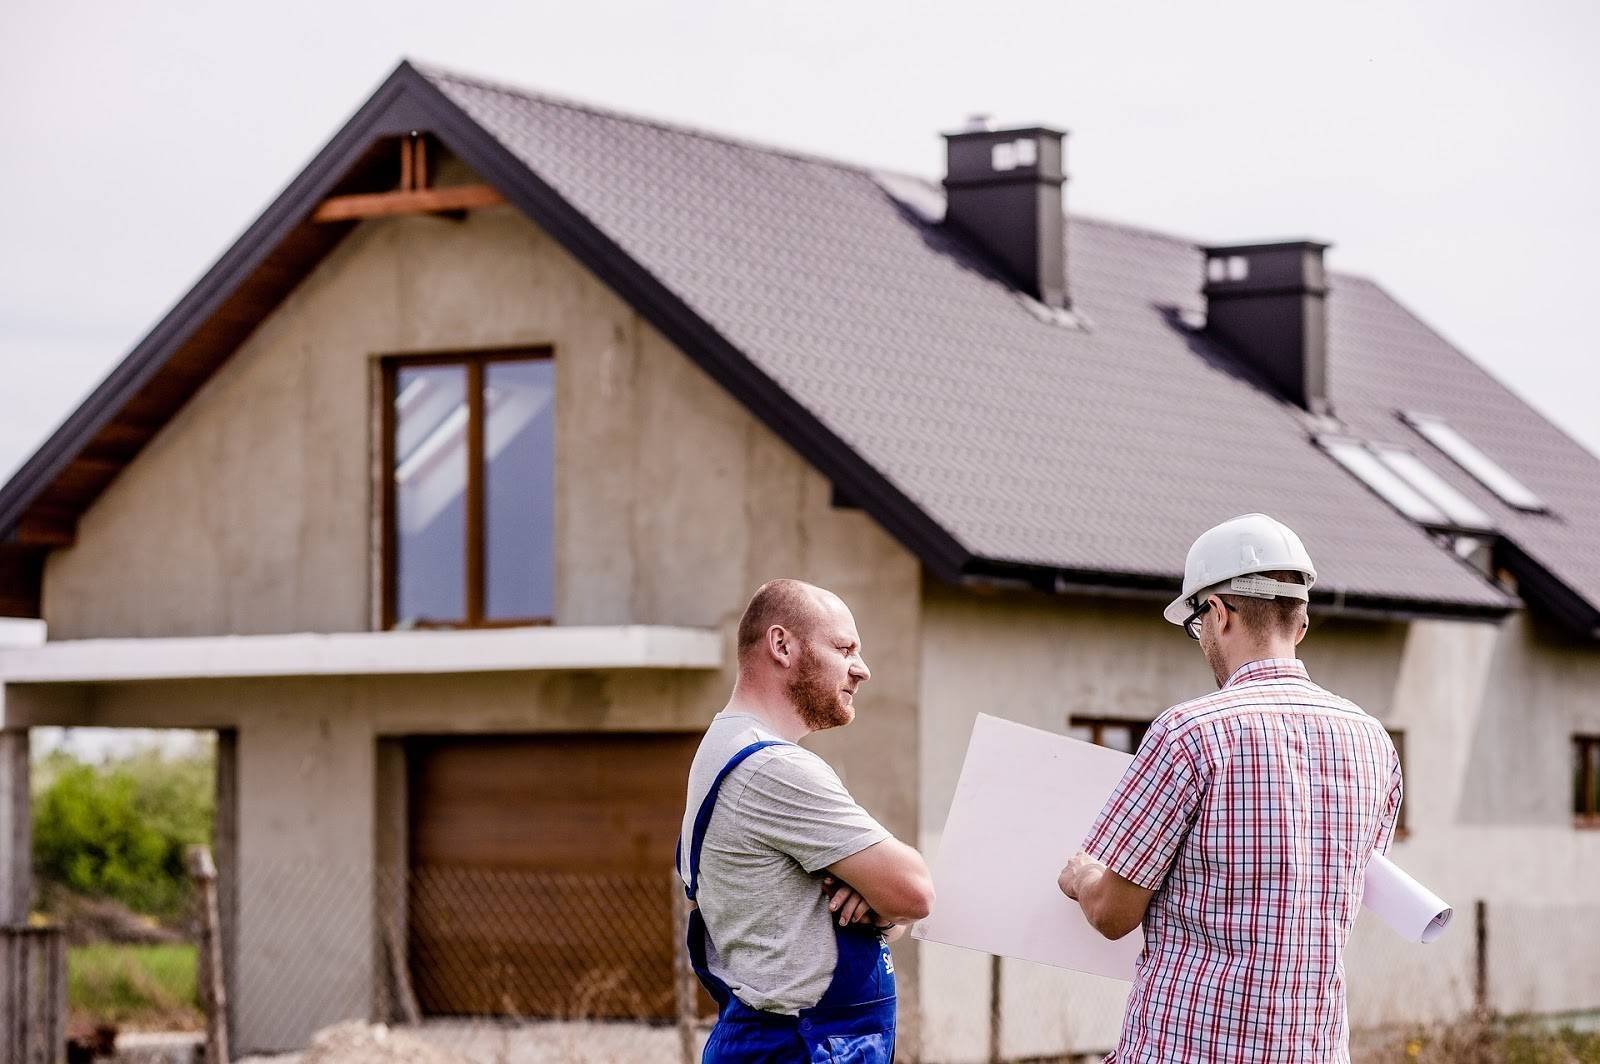 Как лучше сэкономить на строительстве дома: Обзор и Советы